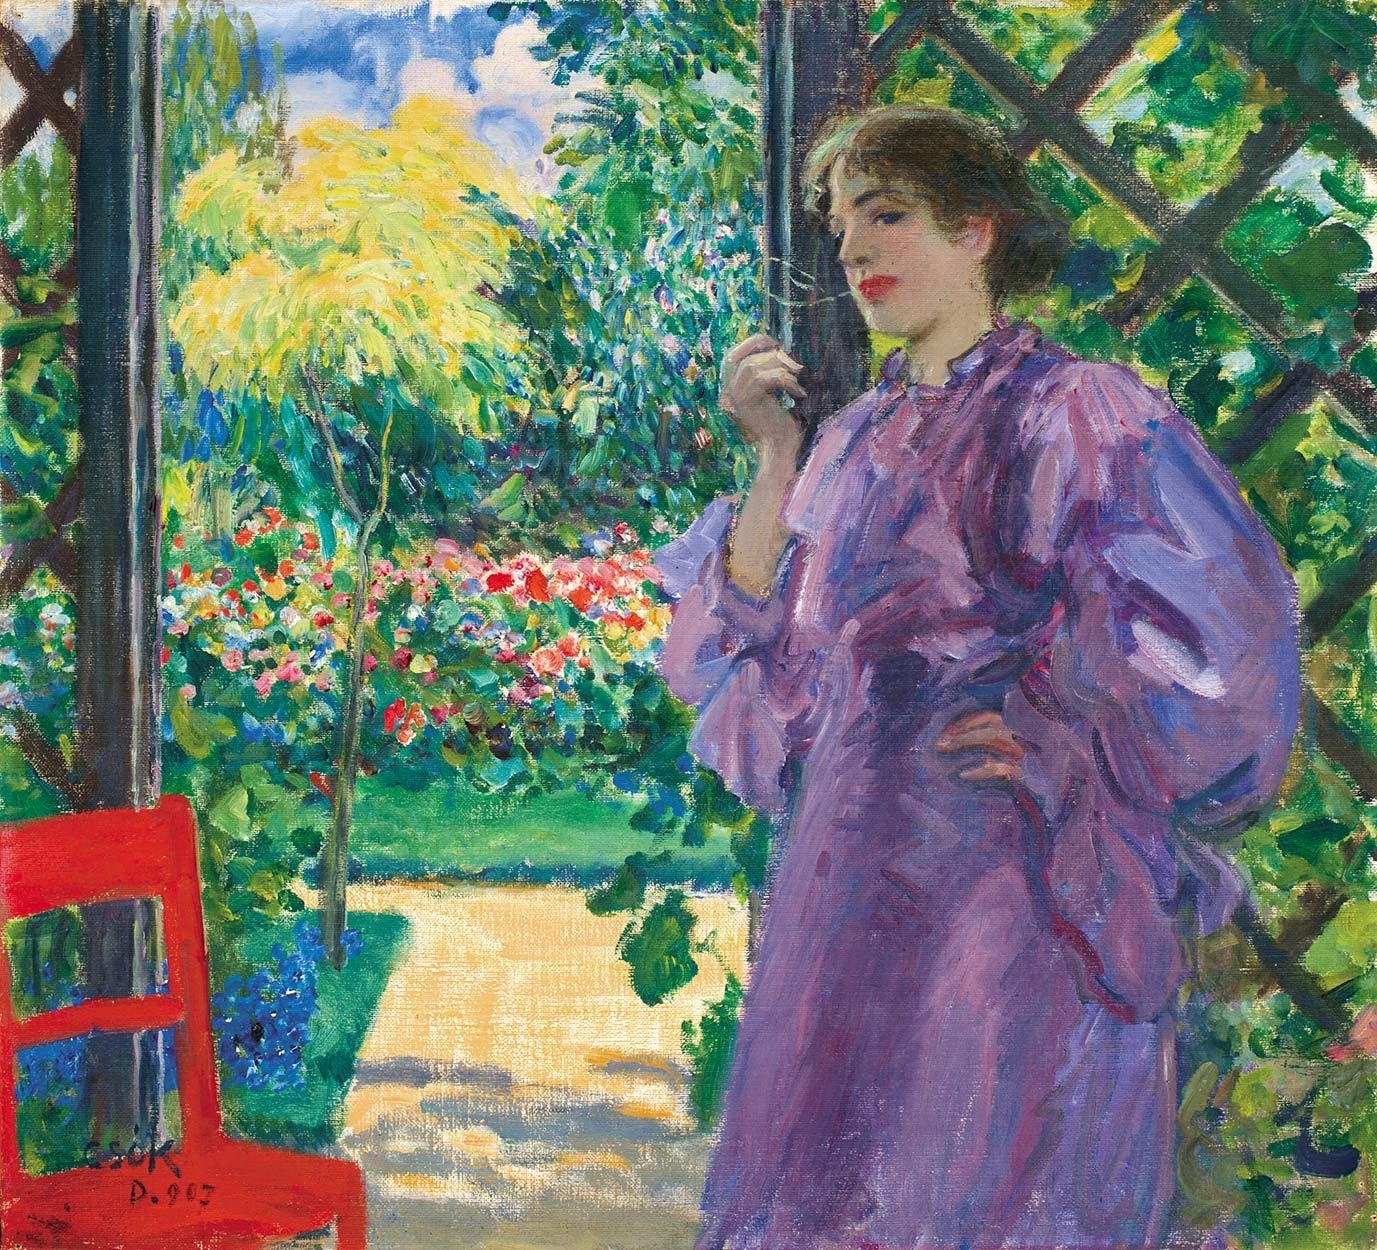 Csók István (1865-1961) At the veranda, 1907